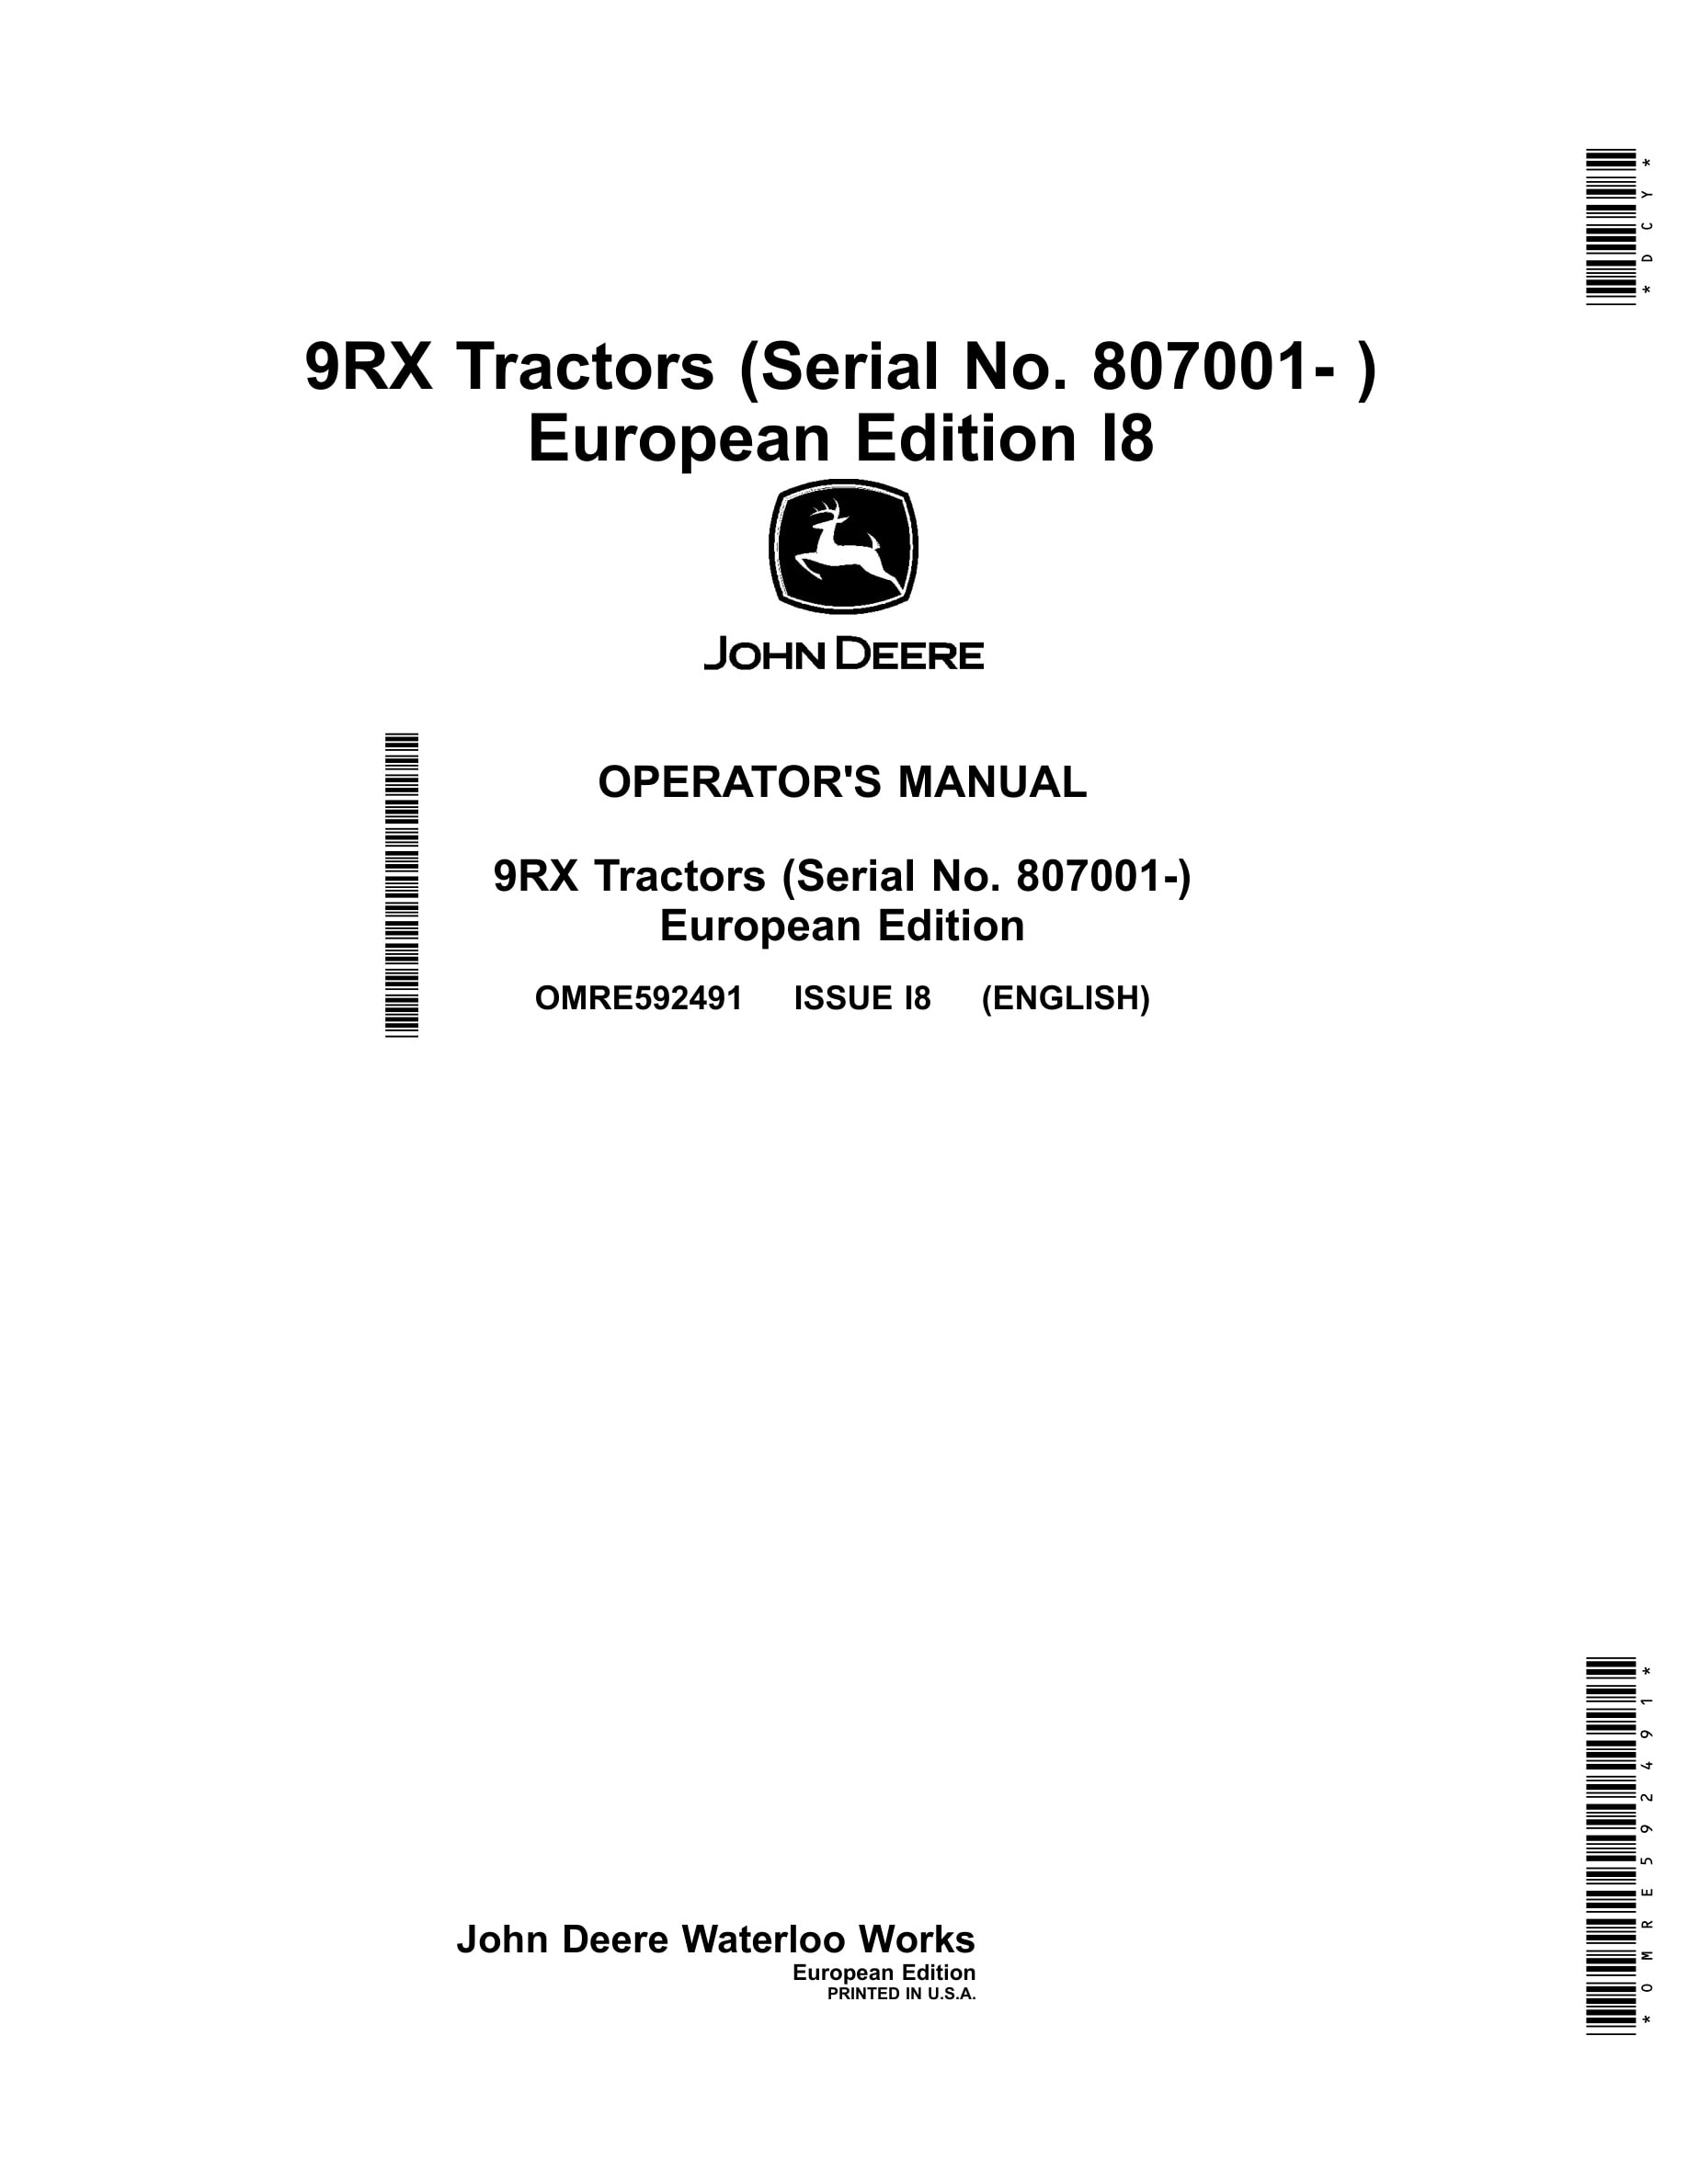 John Deere 9rx Tractors Operator Manuals OMRE592491-1